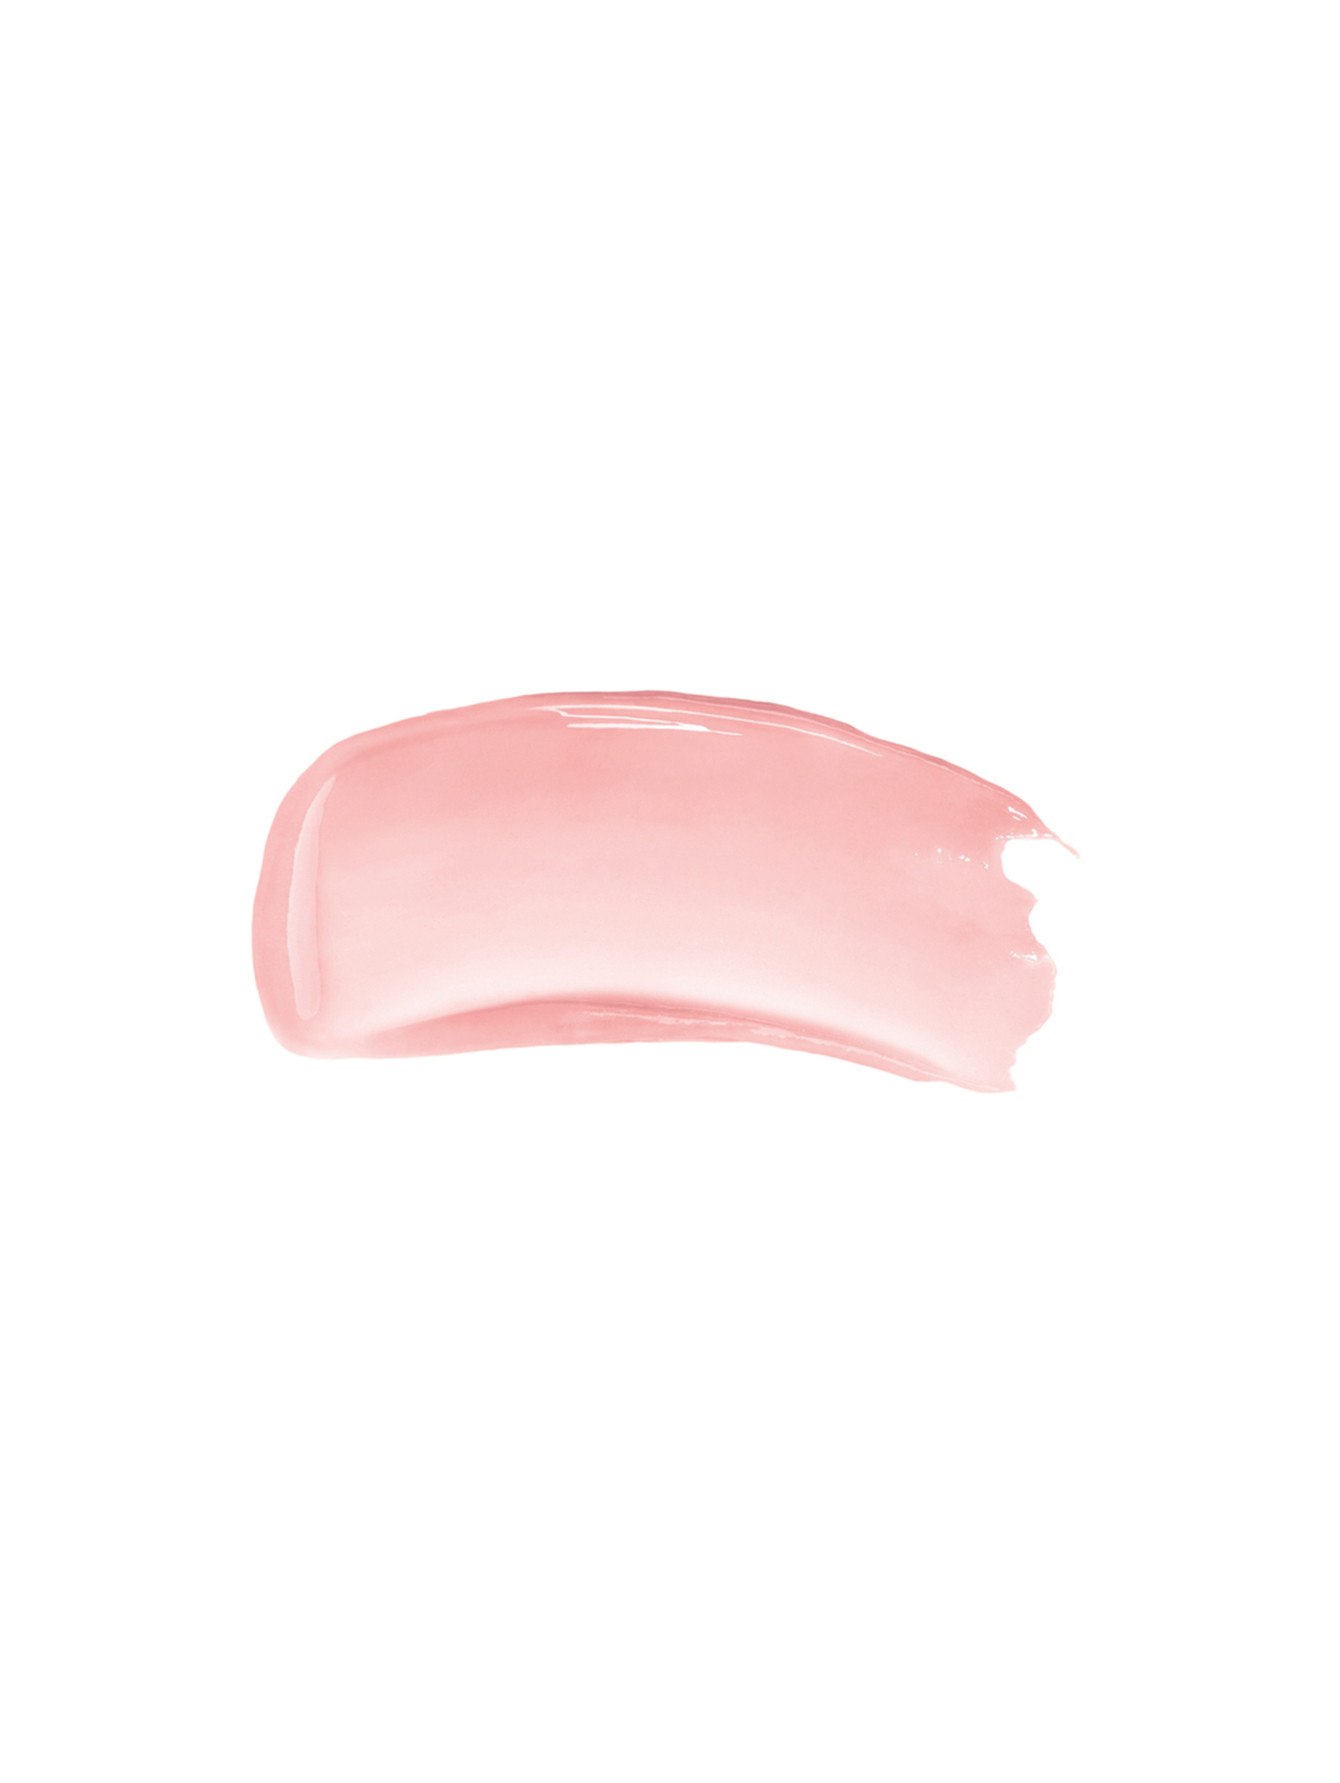 Жидкий бальзам для губ Rose Perfecto Liquid Balm, 001 неотразимый розовый, 6 мл - Обтравка1